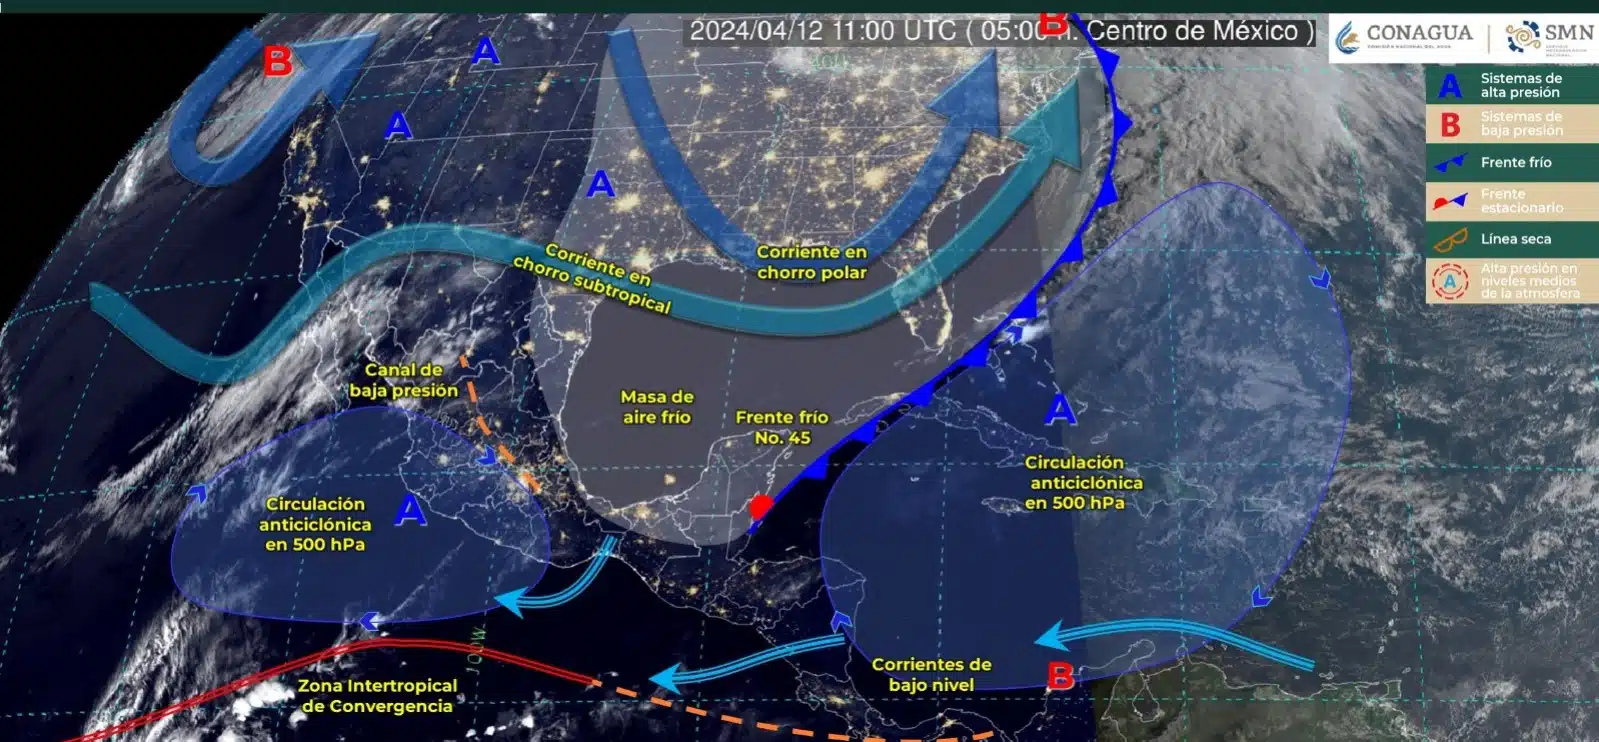 Mapa del sistema Meteorológico en México